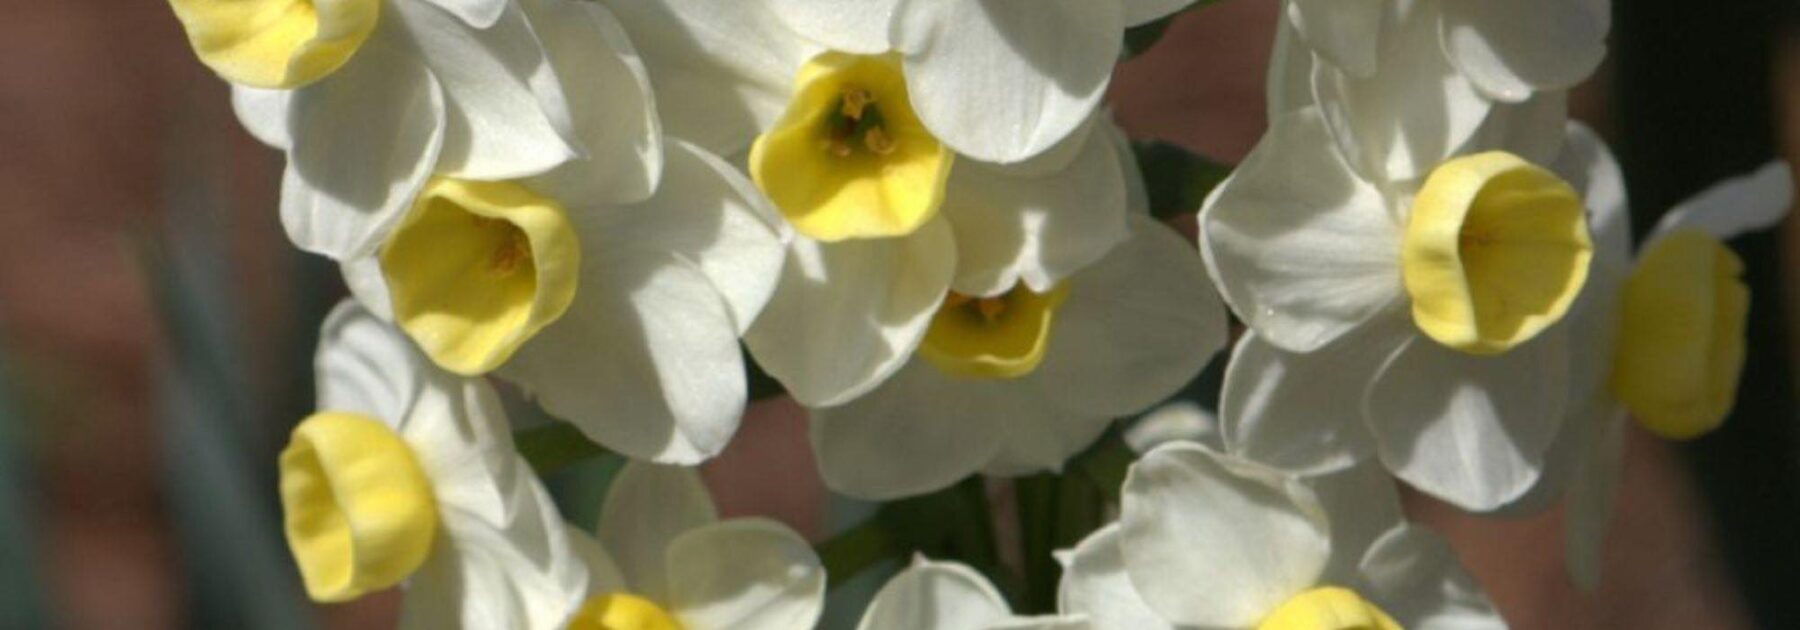 7 narcisses à fleurs bicolores à avoir dans son jardin